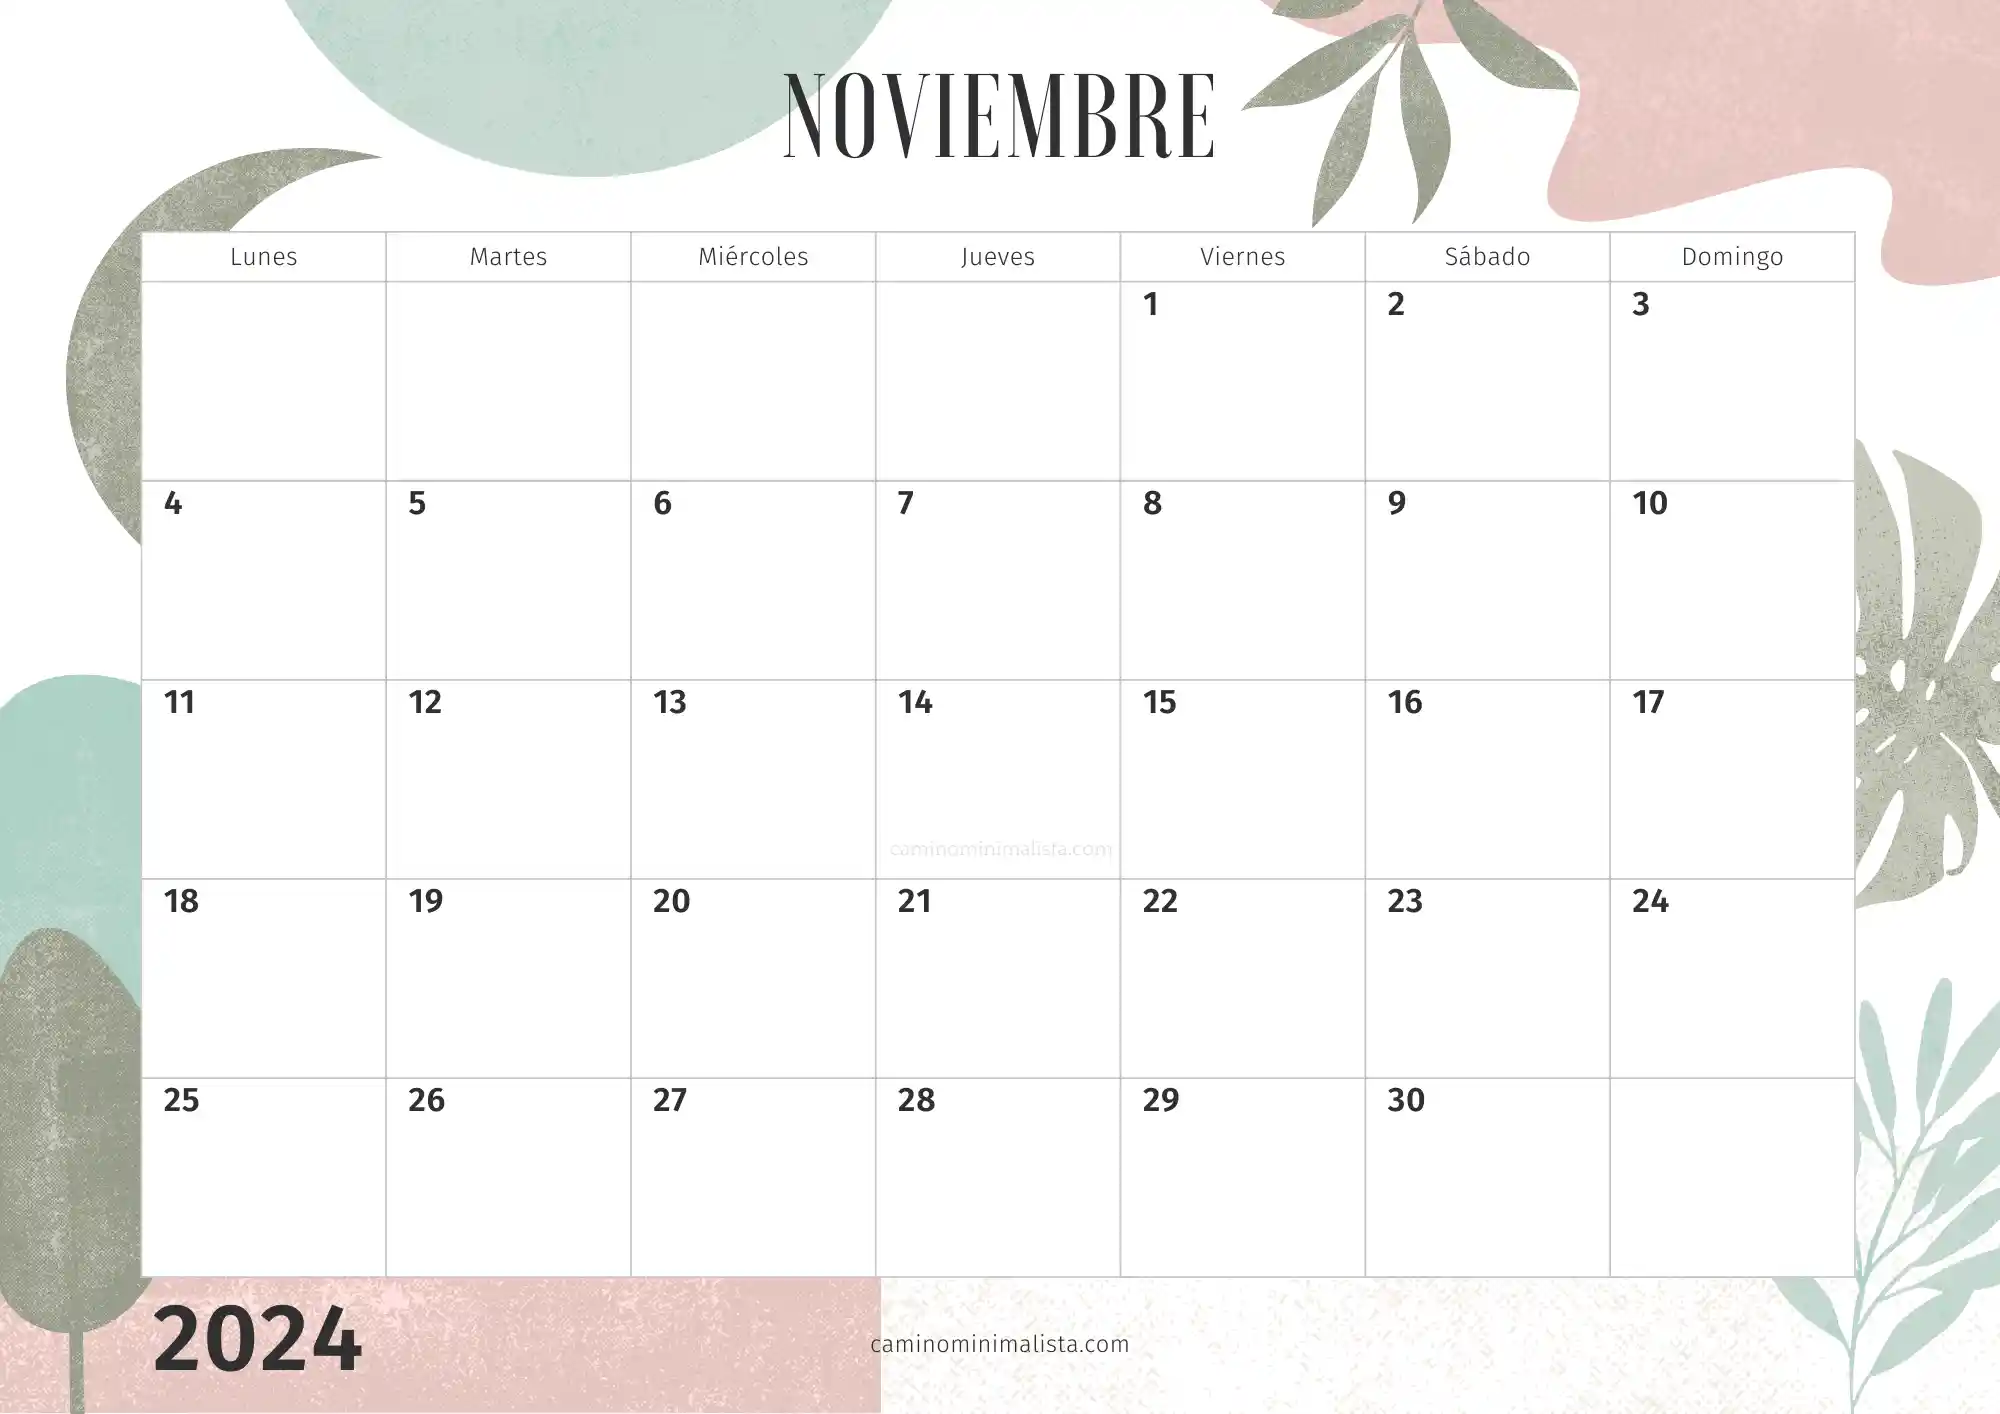 Calendario Noviembre 2024 decorado bonito